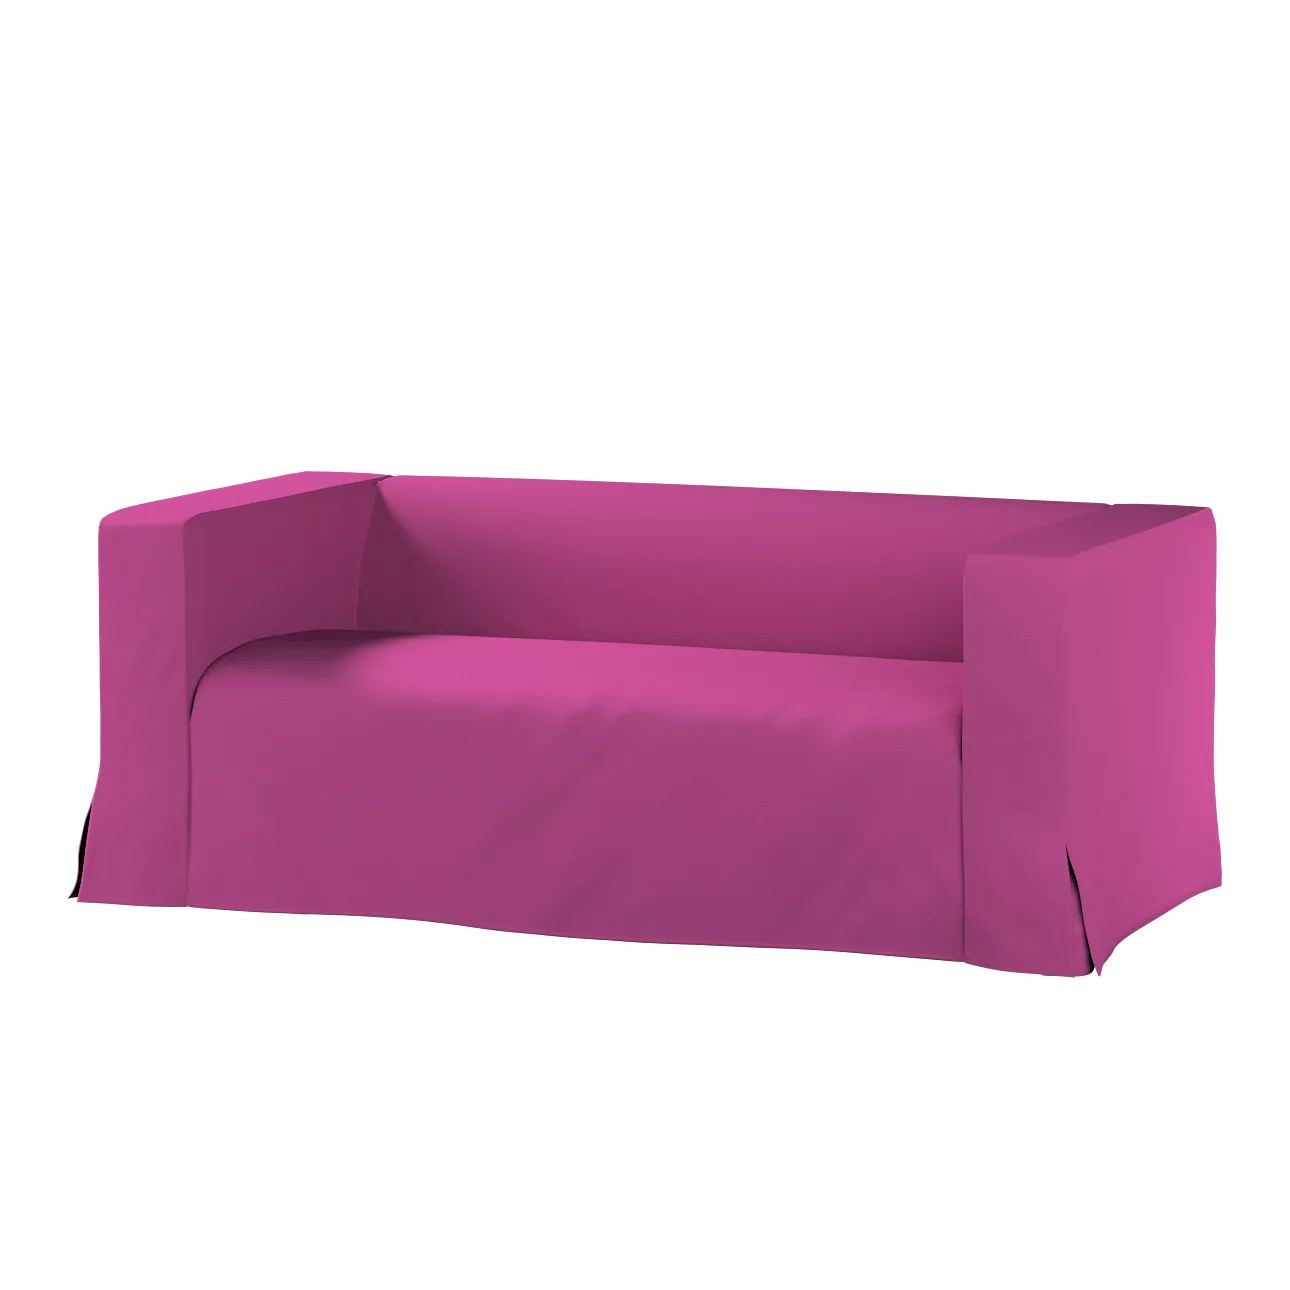 Bezug für Klippan 2-Sitzer Sofa, lang mit Kellerfalte, amarant, Klippan 2-e günstig online kaufen